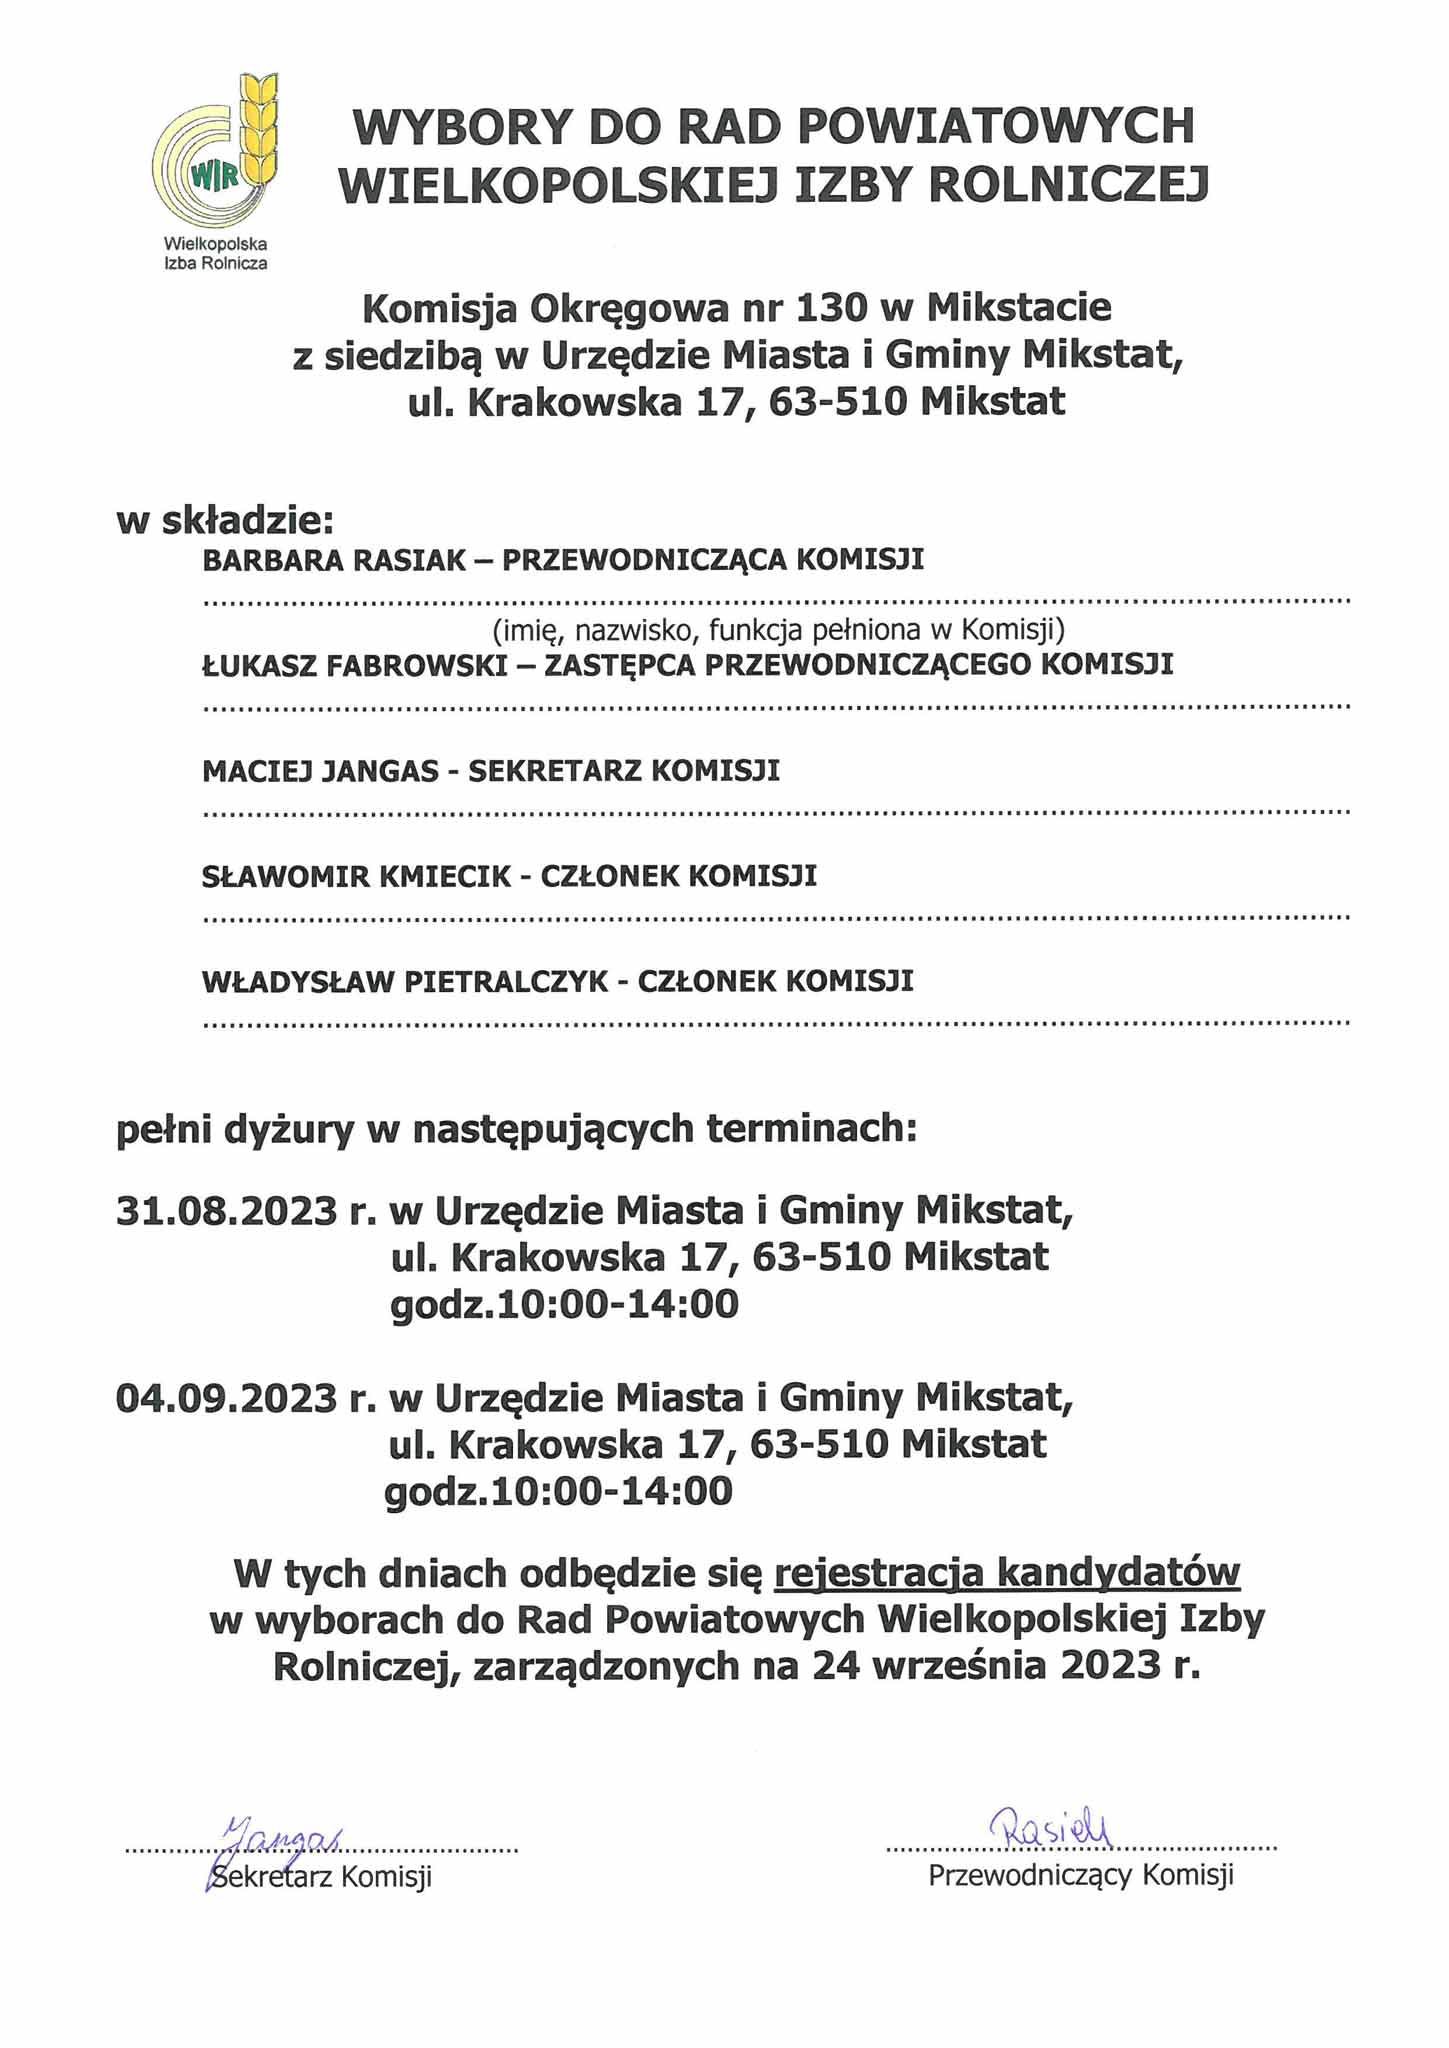 informacje oraz dokumenty dla kandydatów do rad powiatowych Wielkopolskiej Izby Rolniczej